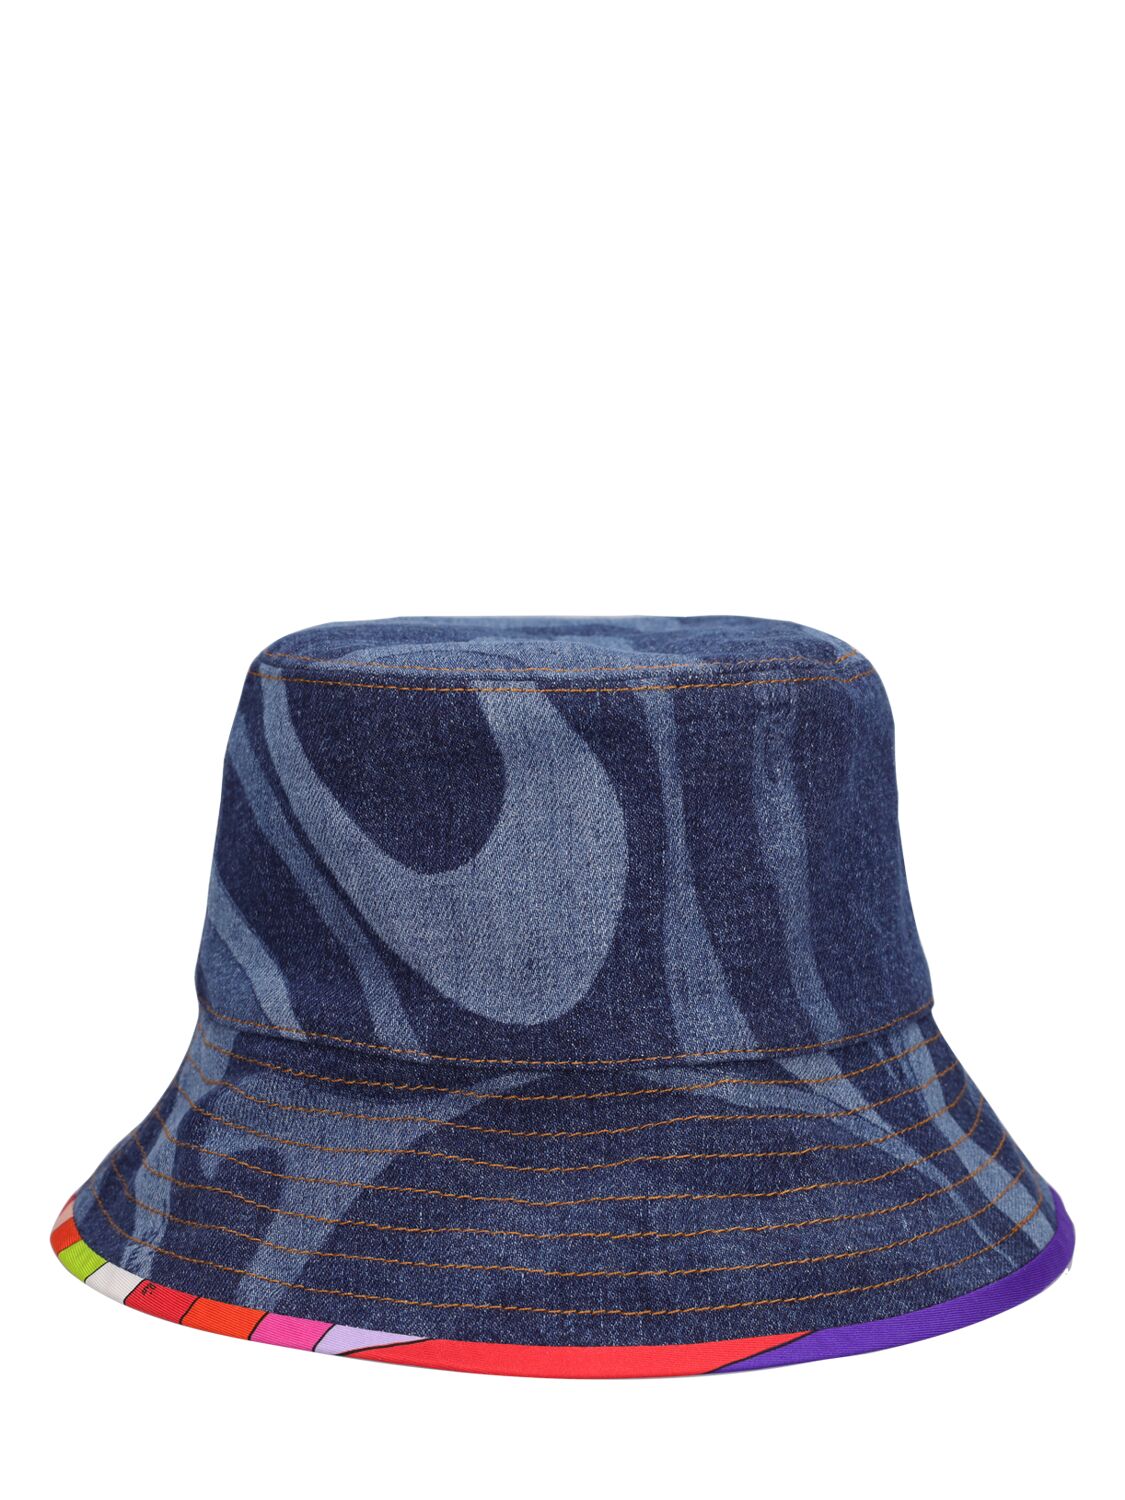 Pucci Lasered Denim Bucket Hat In Blueceleste